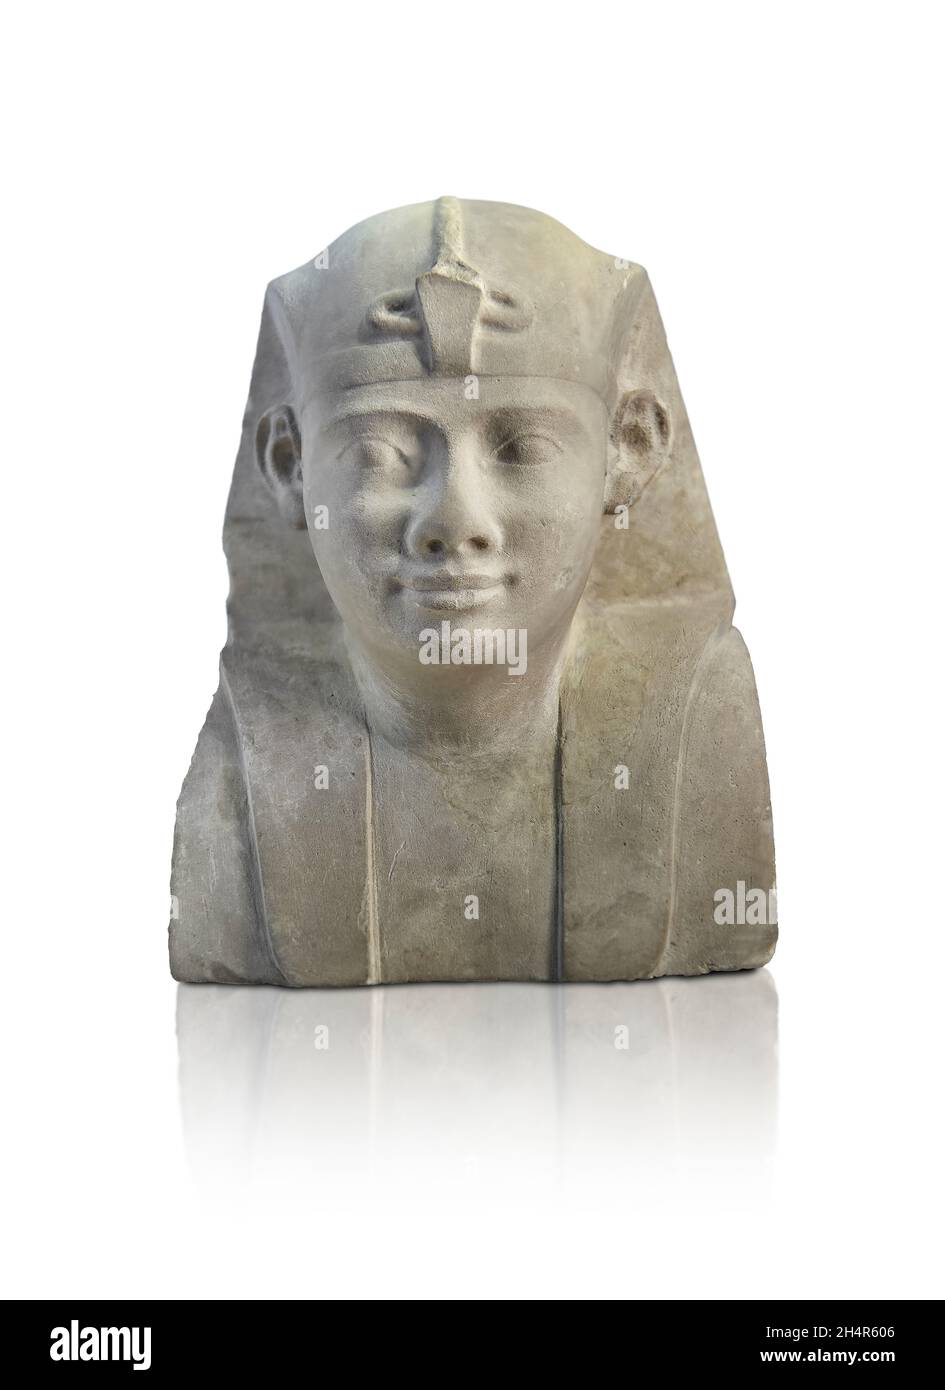 Alte ägyptische Büste eines Königs, 399-200 v. Chr. Louvre Museum E 11242. Dies ist ein unvollendetes Skulpturmodell . Höhe: 15.2 cm; Breite: 12.2 cm, Sullu r Stockfoto